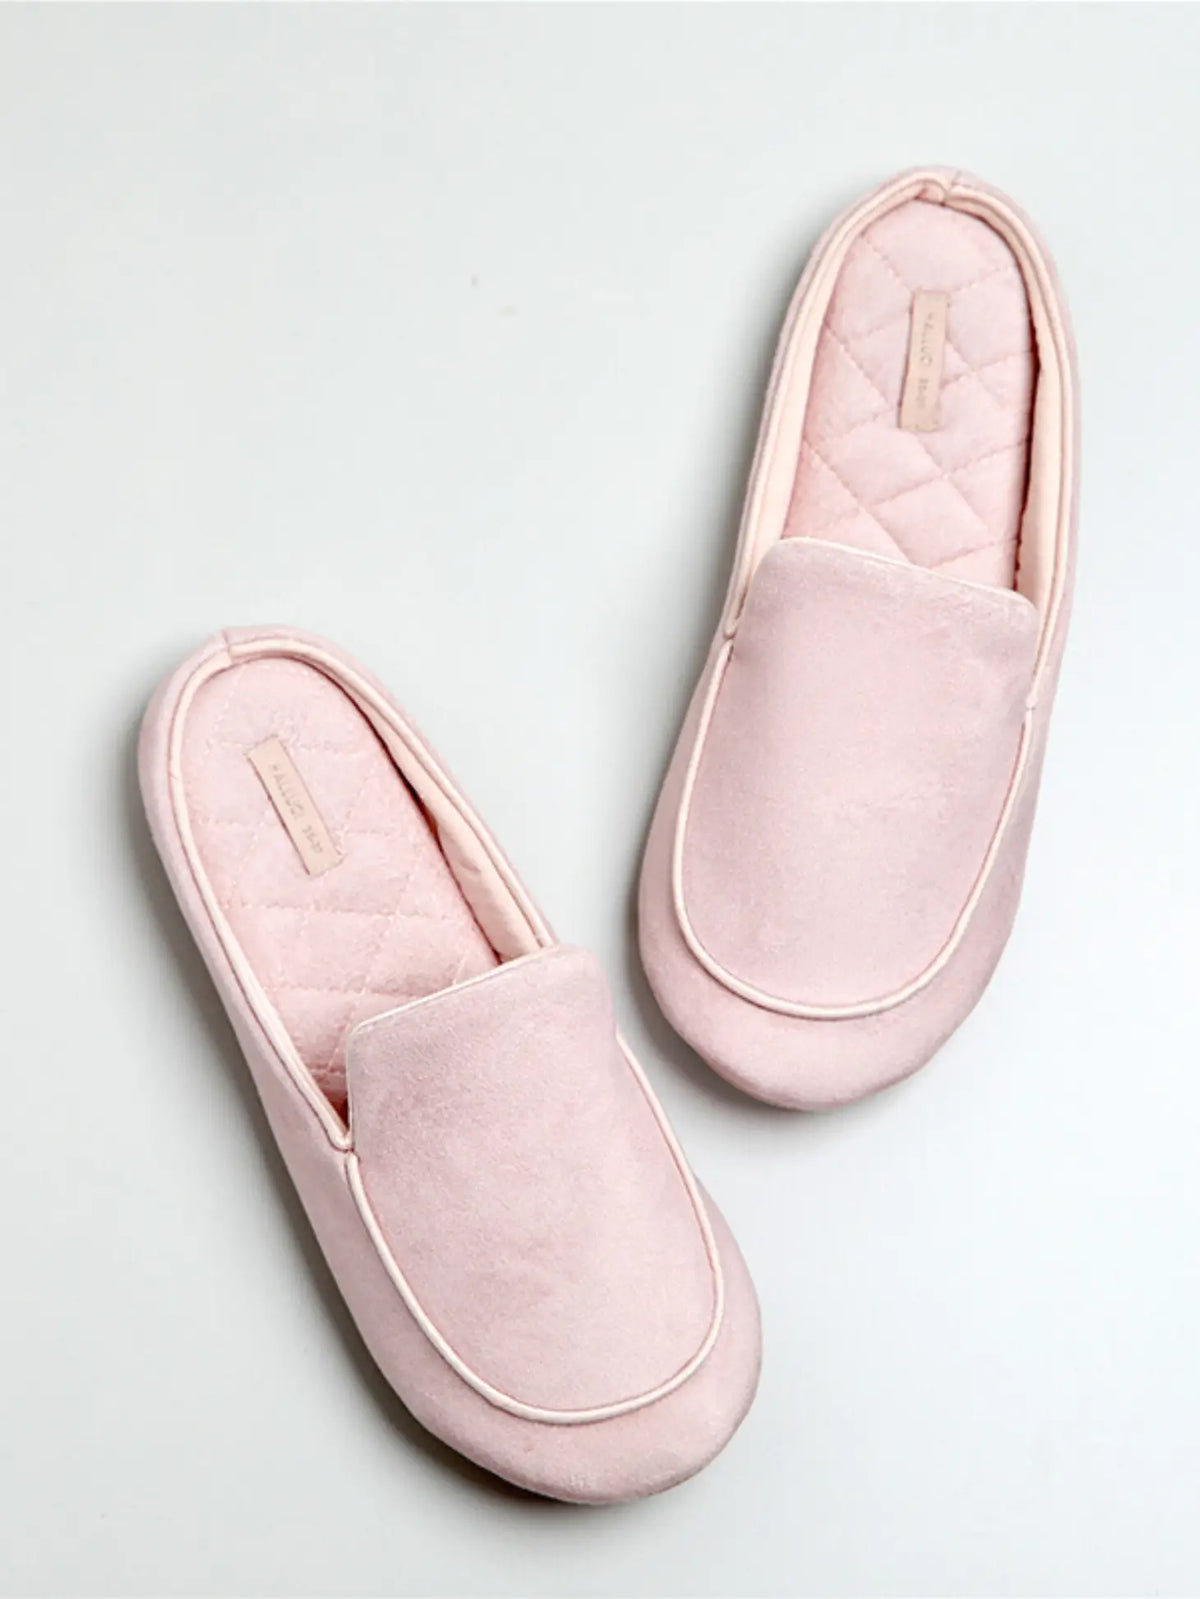 Women Slip-on Slippers - Blush Size 6.5-7